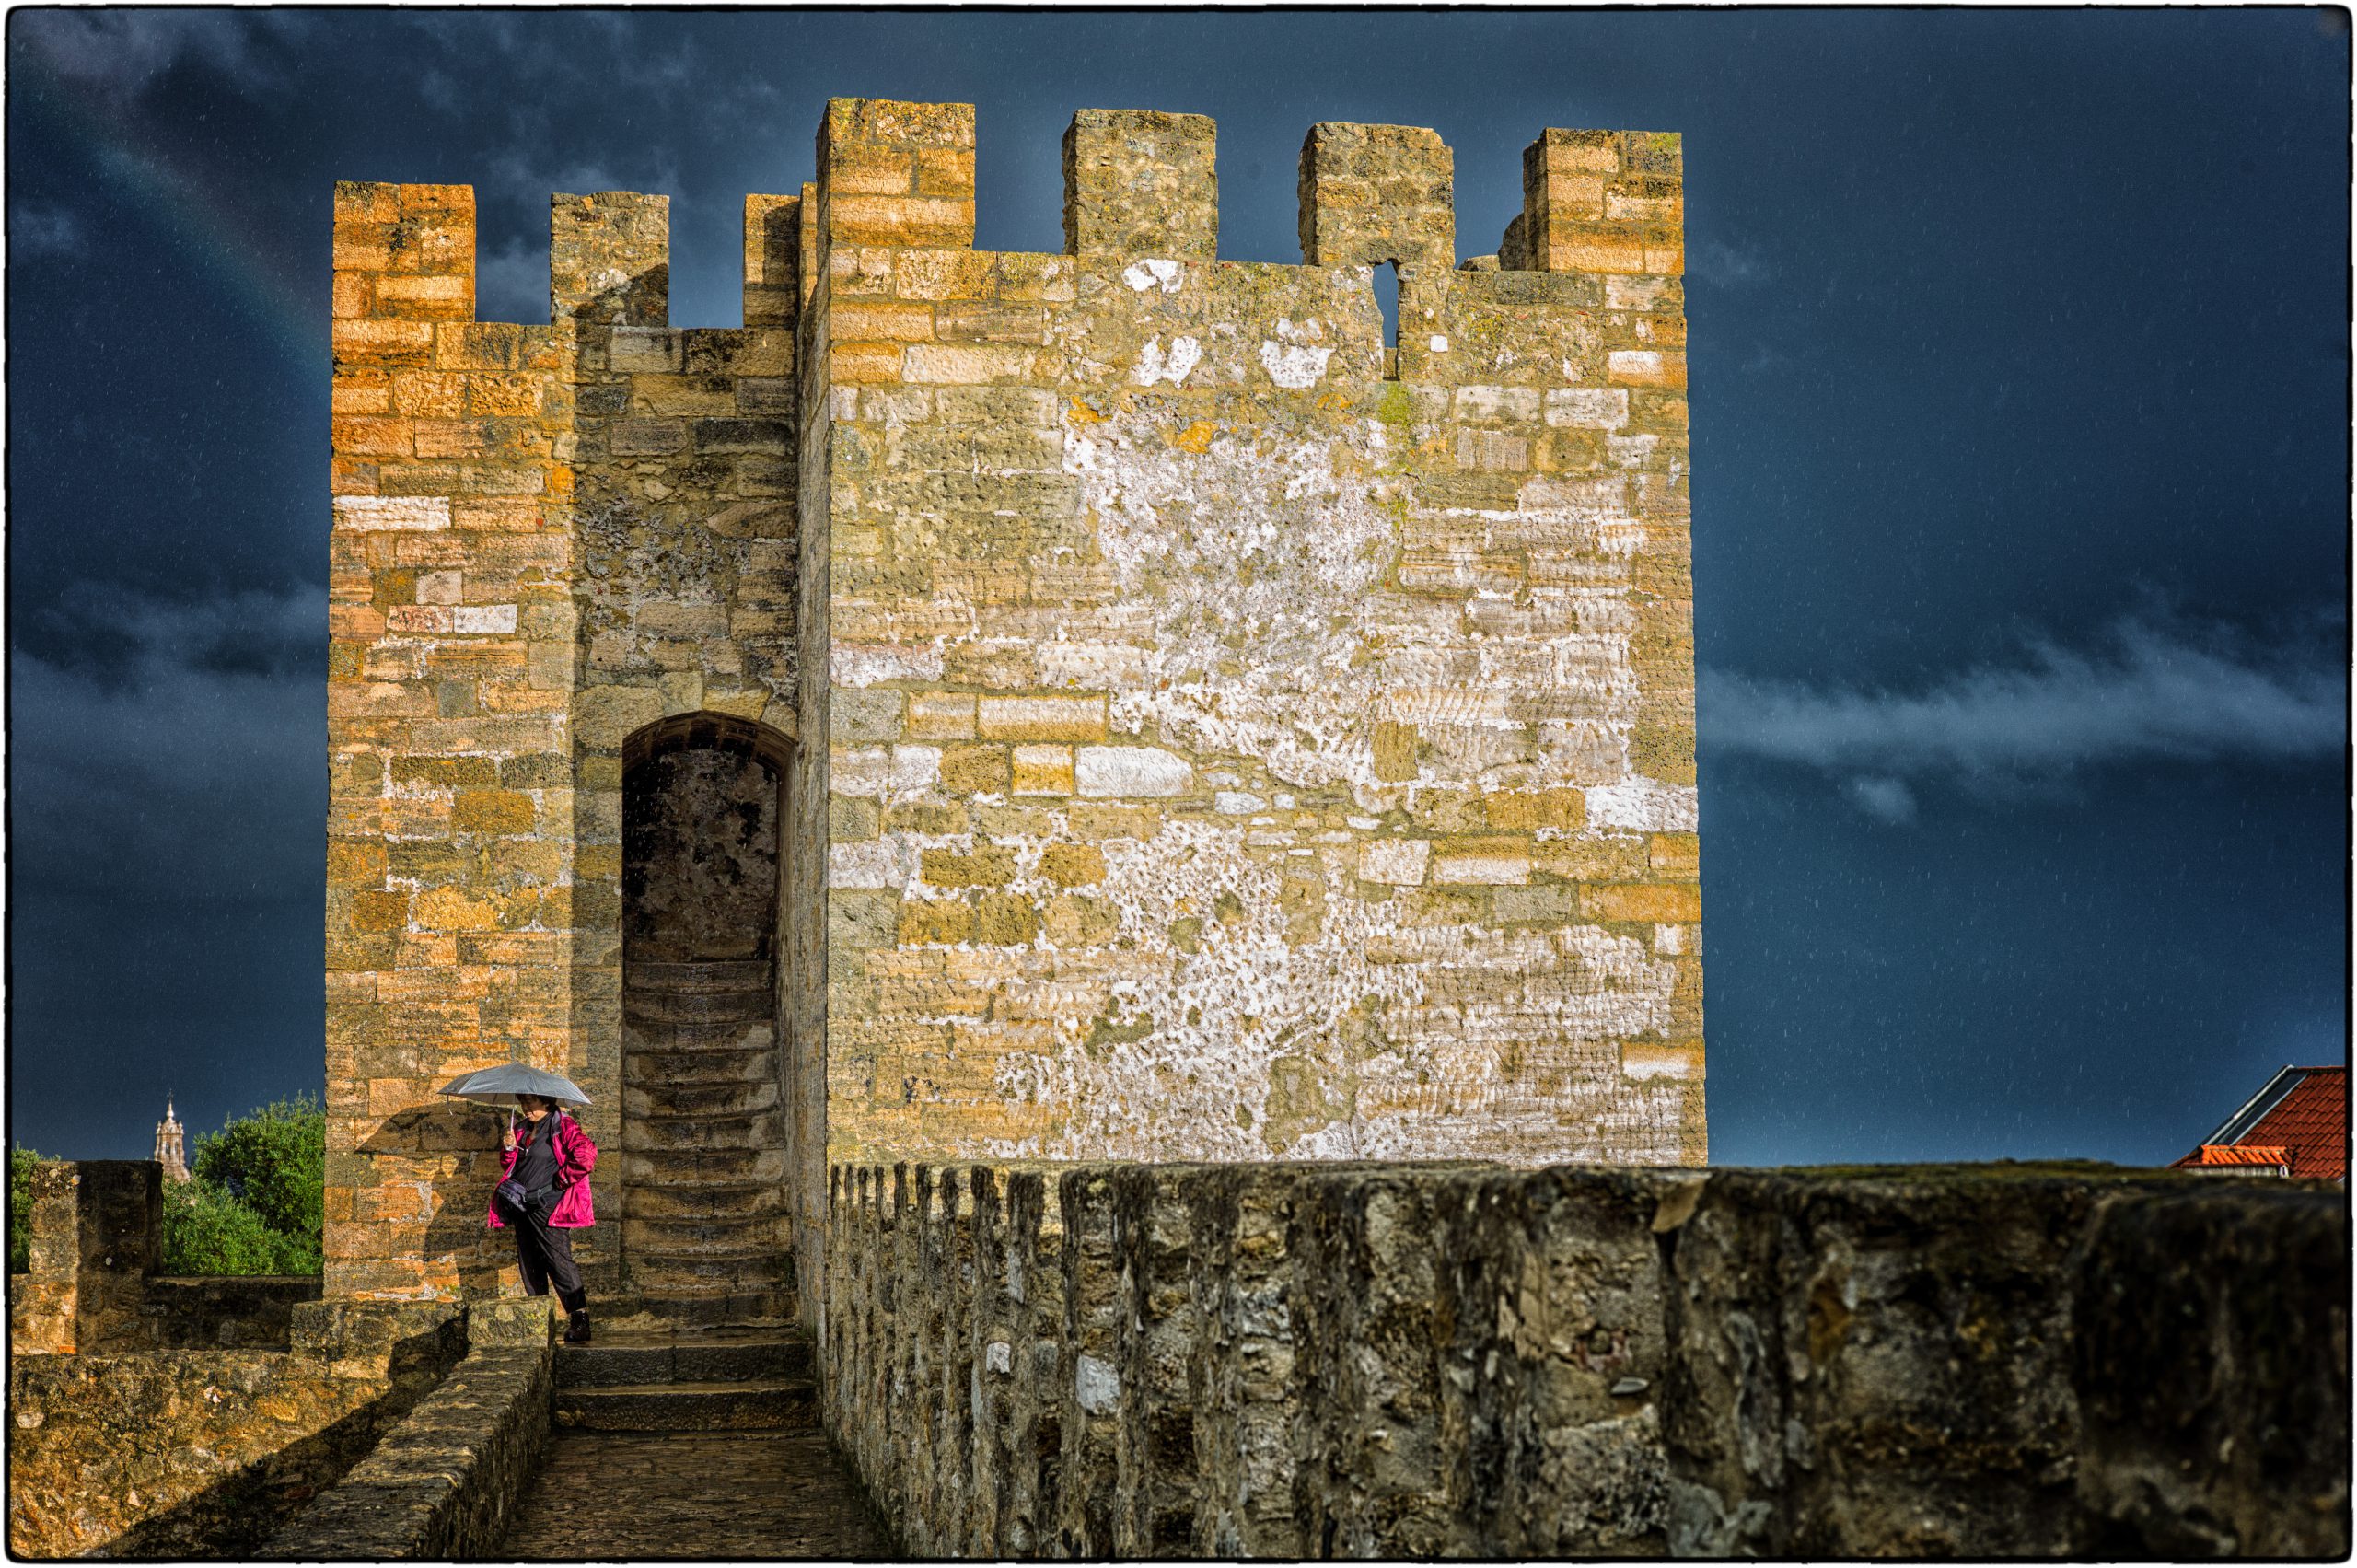 Castle of São Jorge